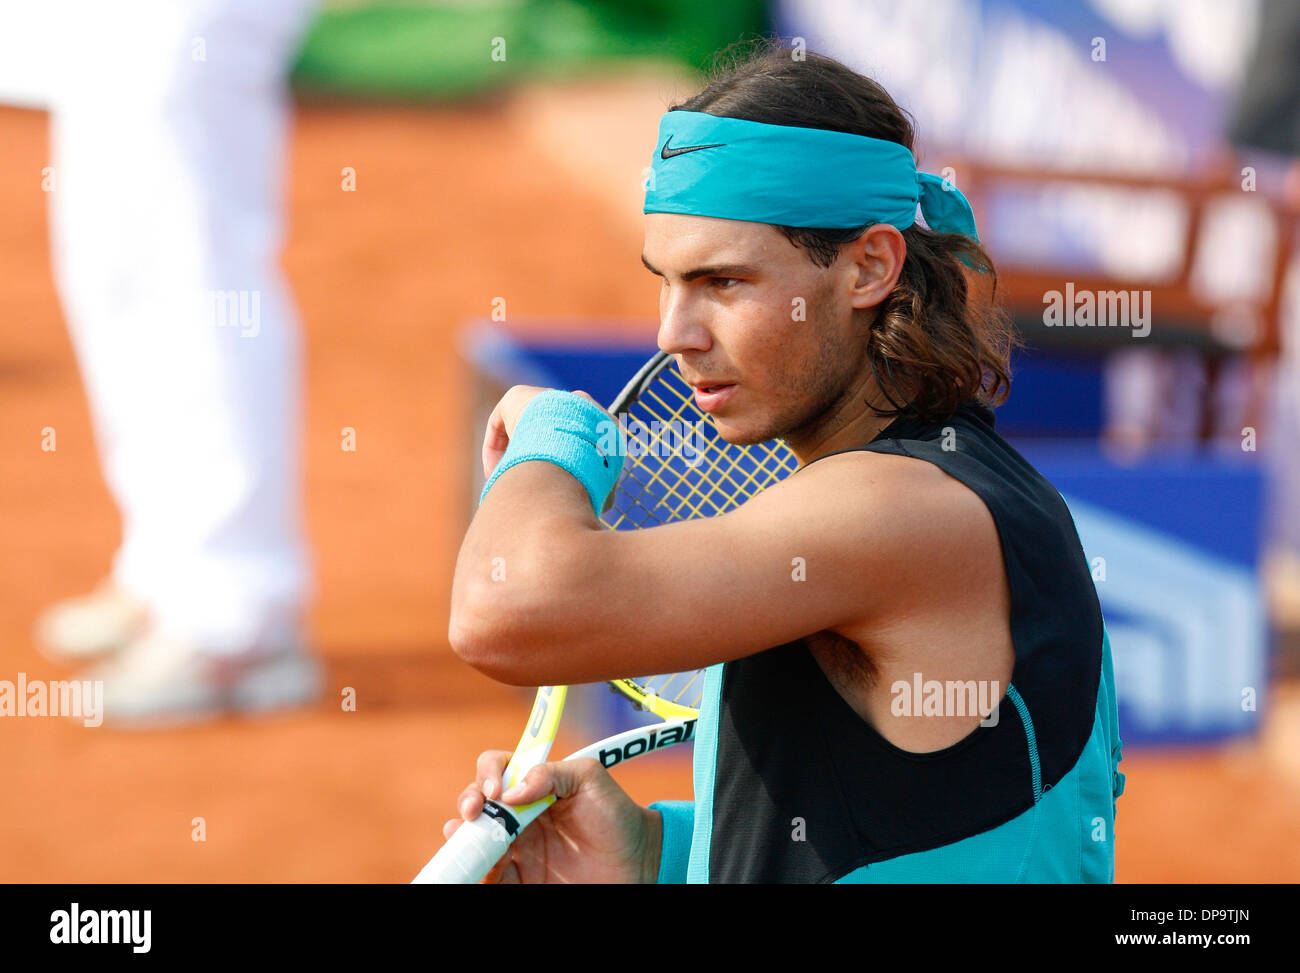 L'Espagne est le joueur de tennis Rafa Nadal vu lors d'un match dans l'île de Majorque, Espagne. Banque D'Images